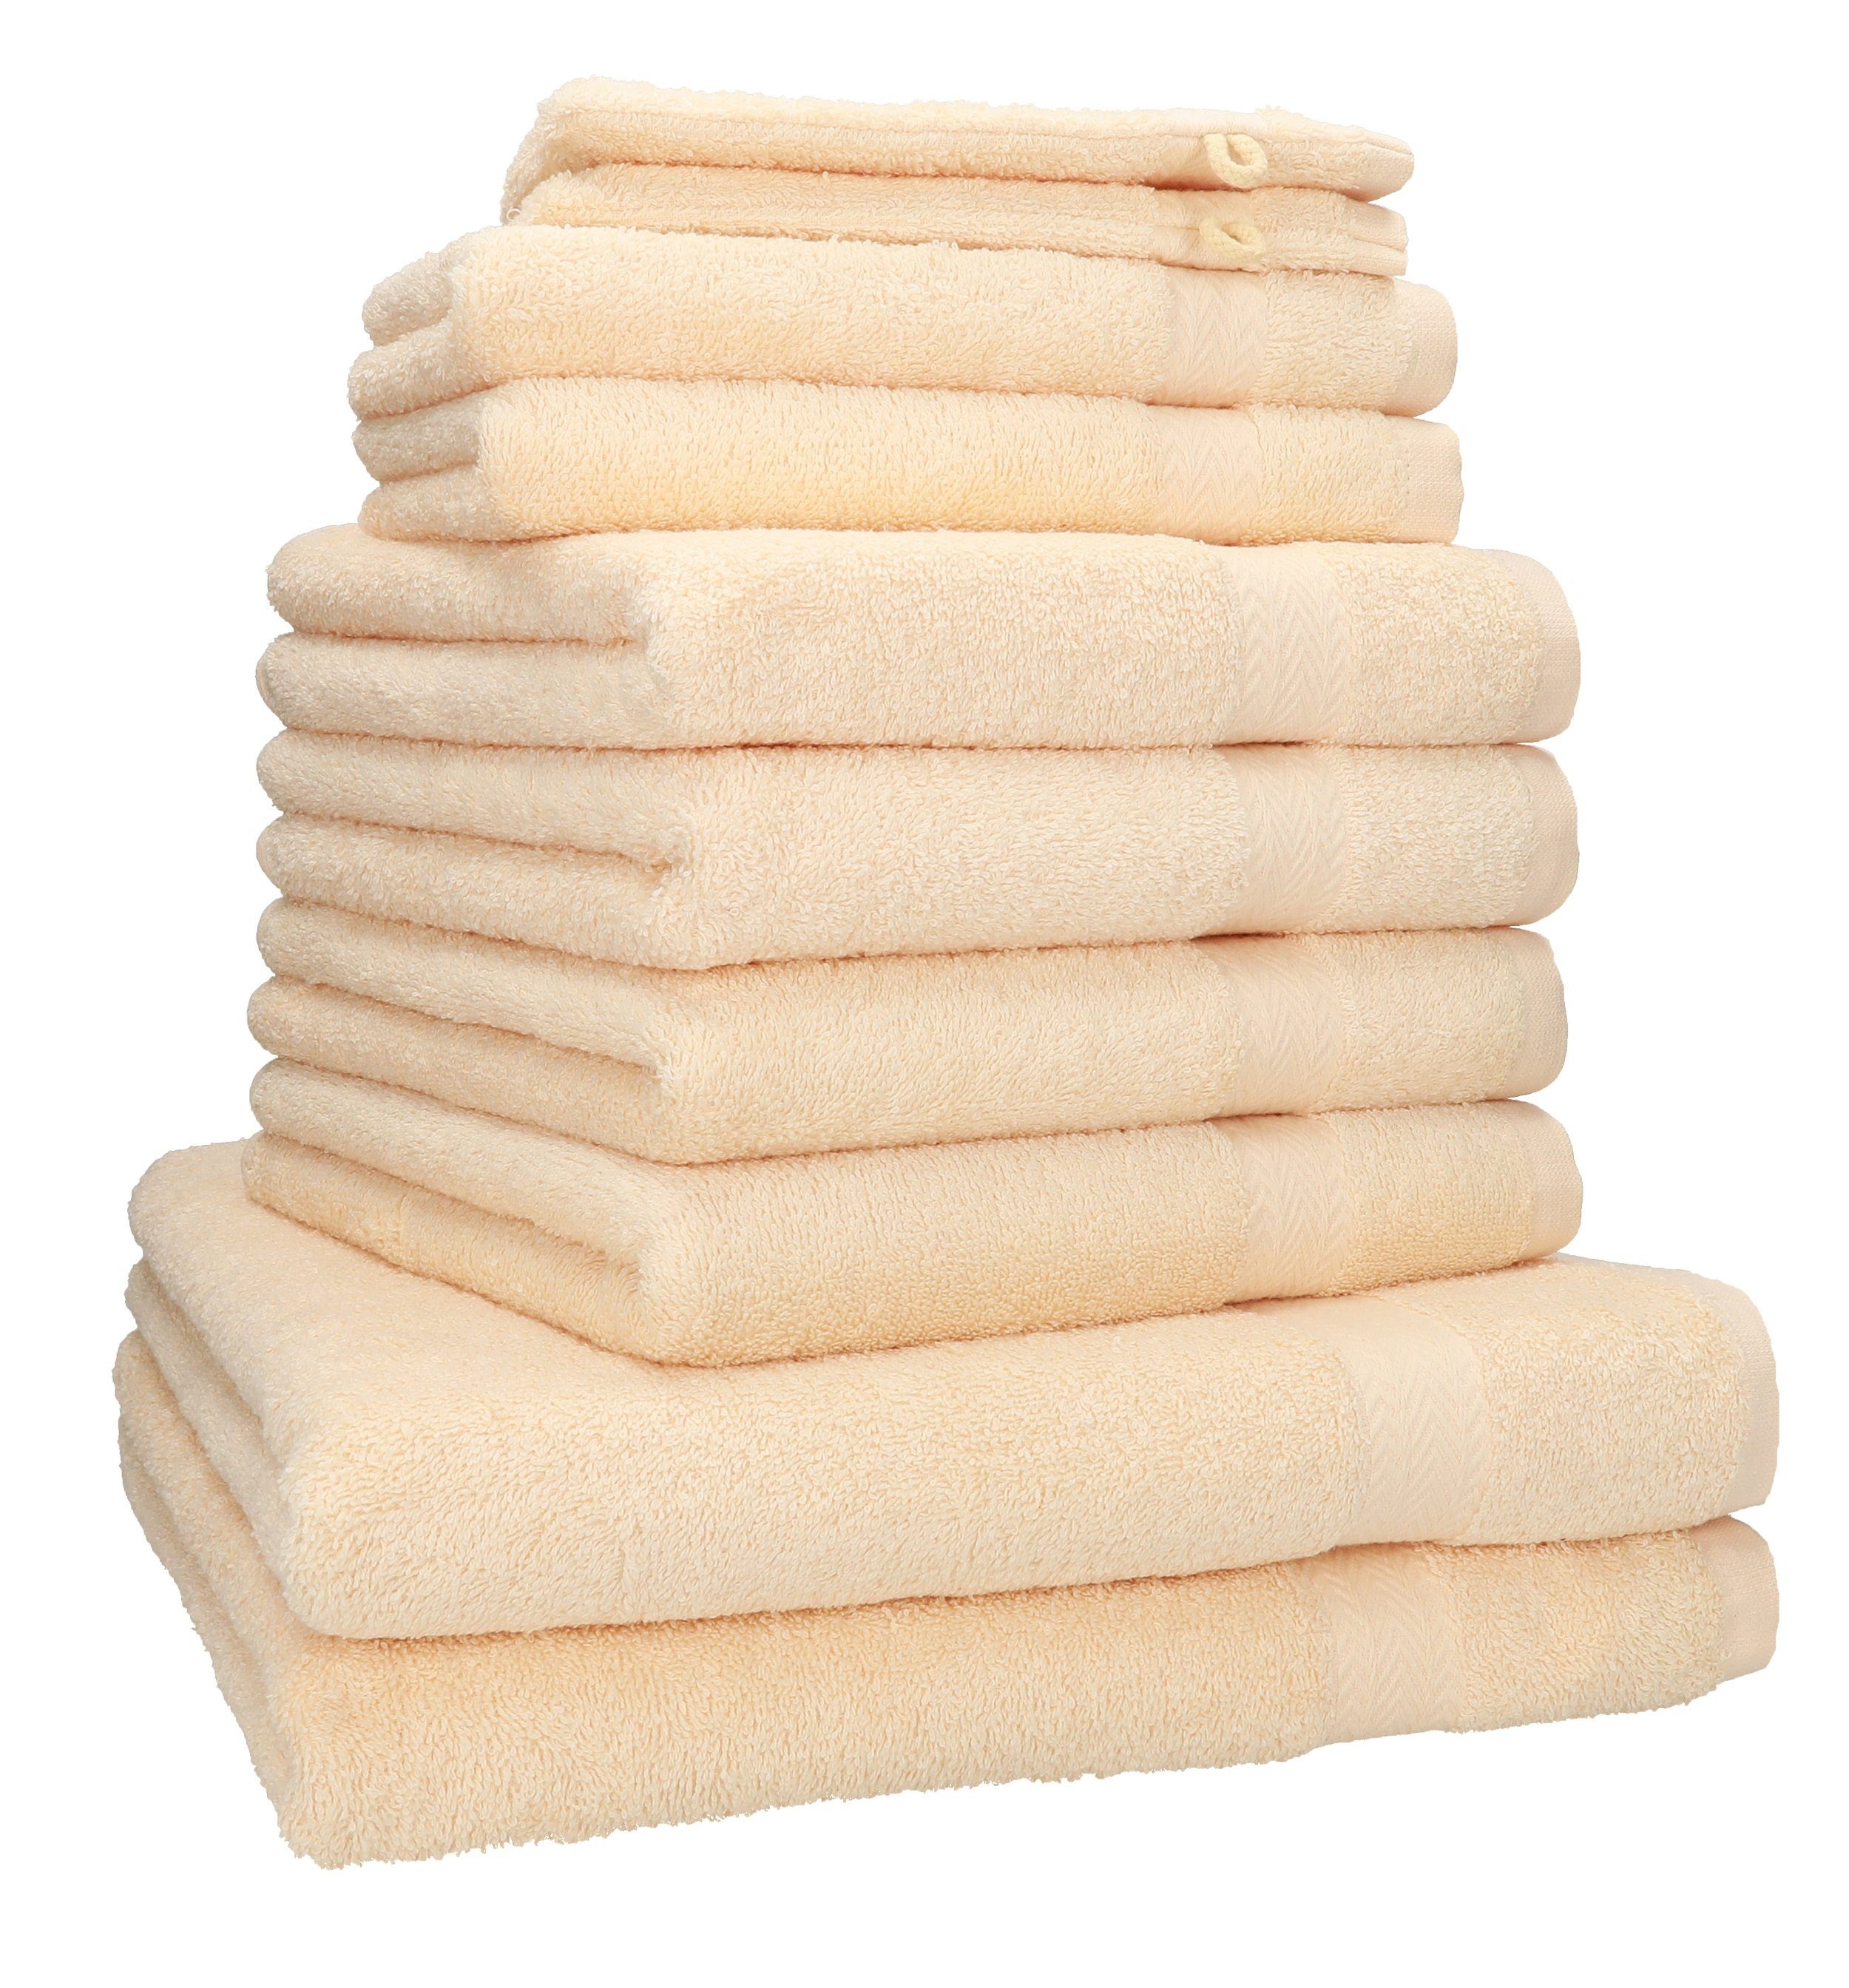 Betz Handtuch Set 10-tlg. Handtuch-Set PREMIUM 100% Baumwolle, 100% Baumwolle, (10-tlg) beige